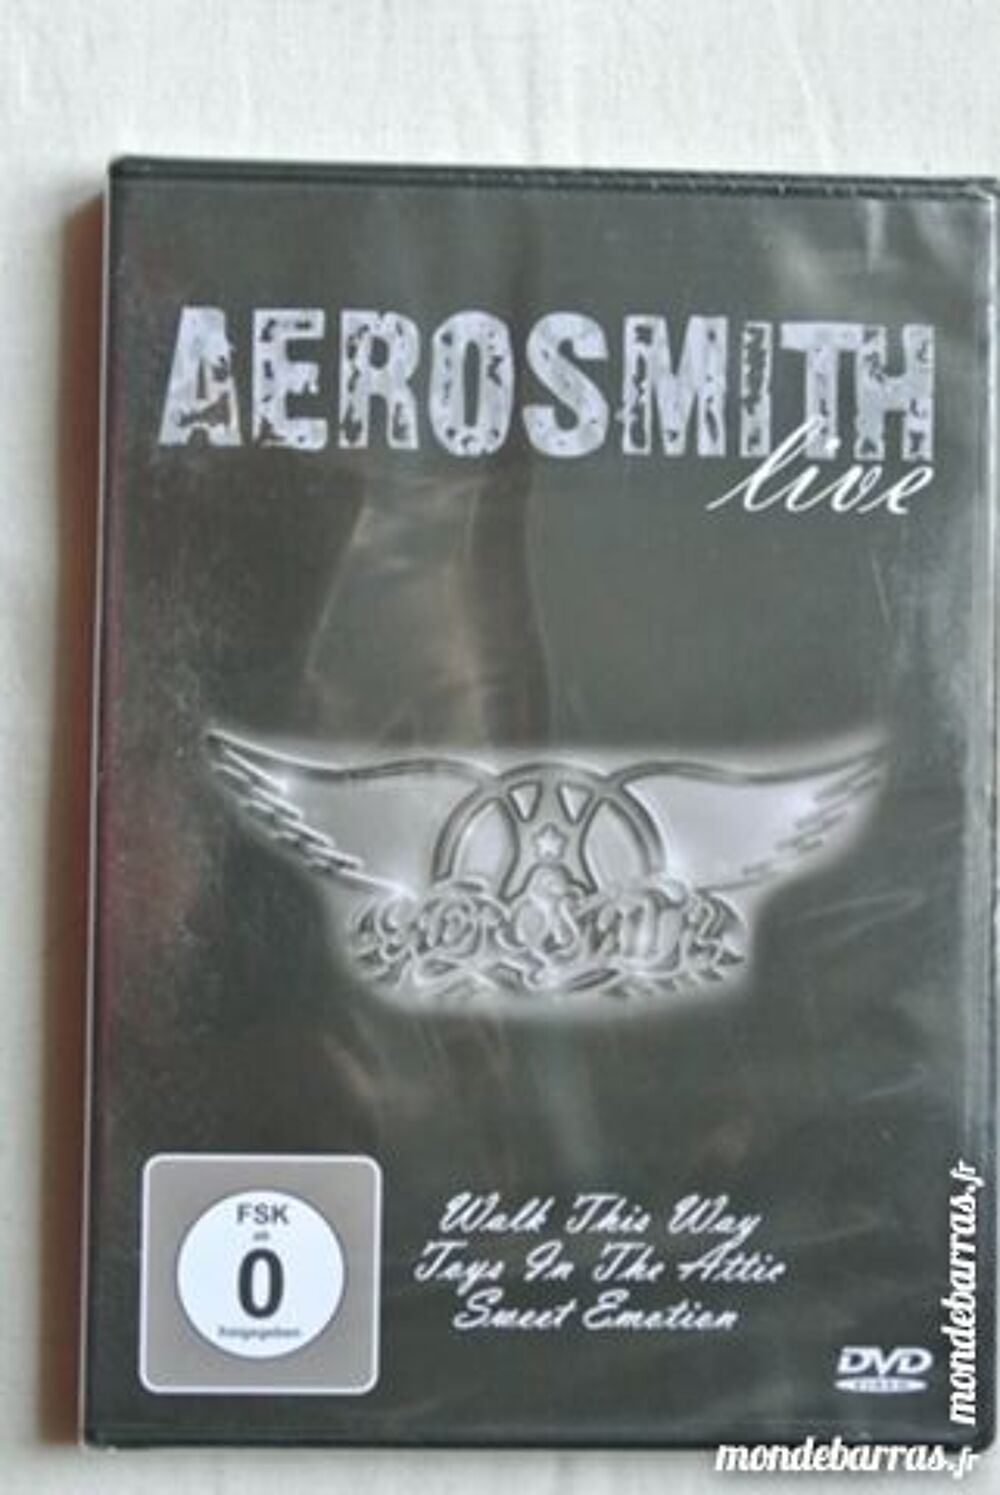 &quot;Aerosmith &quot;&quot;Live&quot;&quot;&quot; DVD et blu-ray